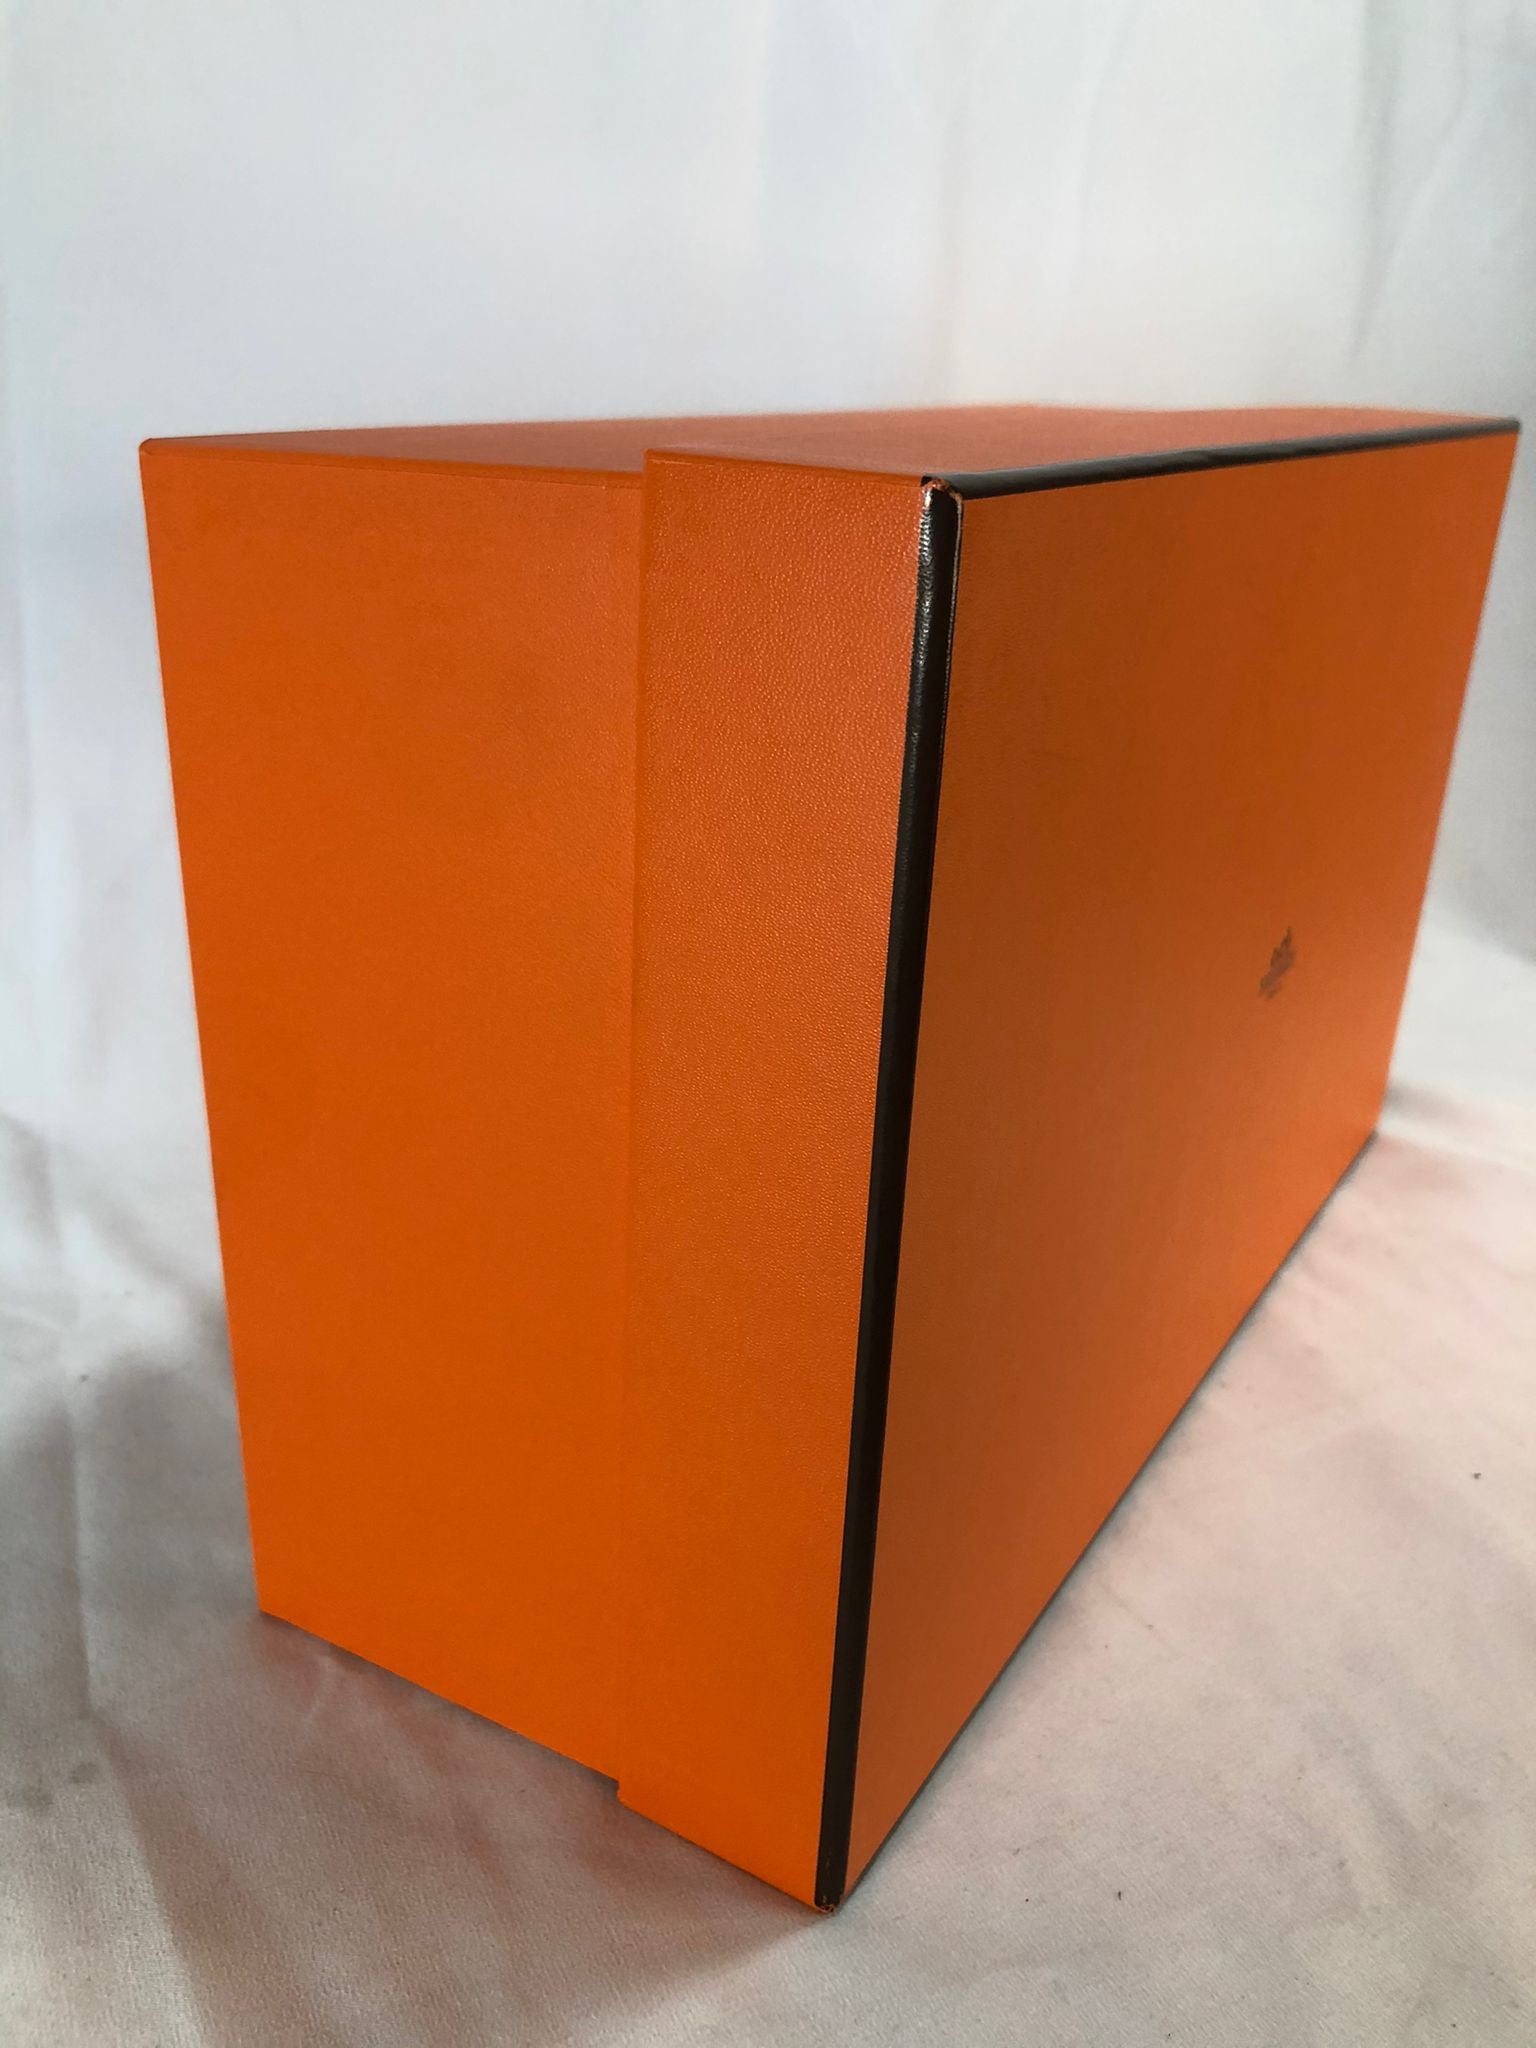 Authentic HERMES PARIS Gift Boxes – Wholesale Bidder